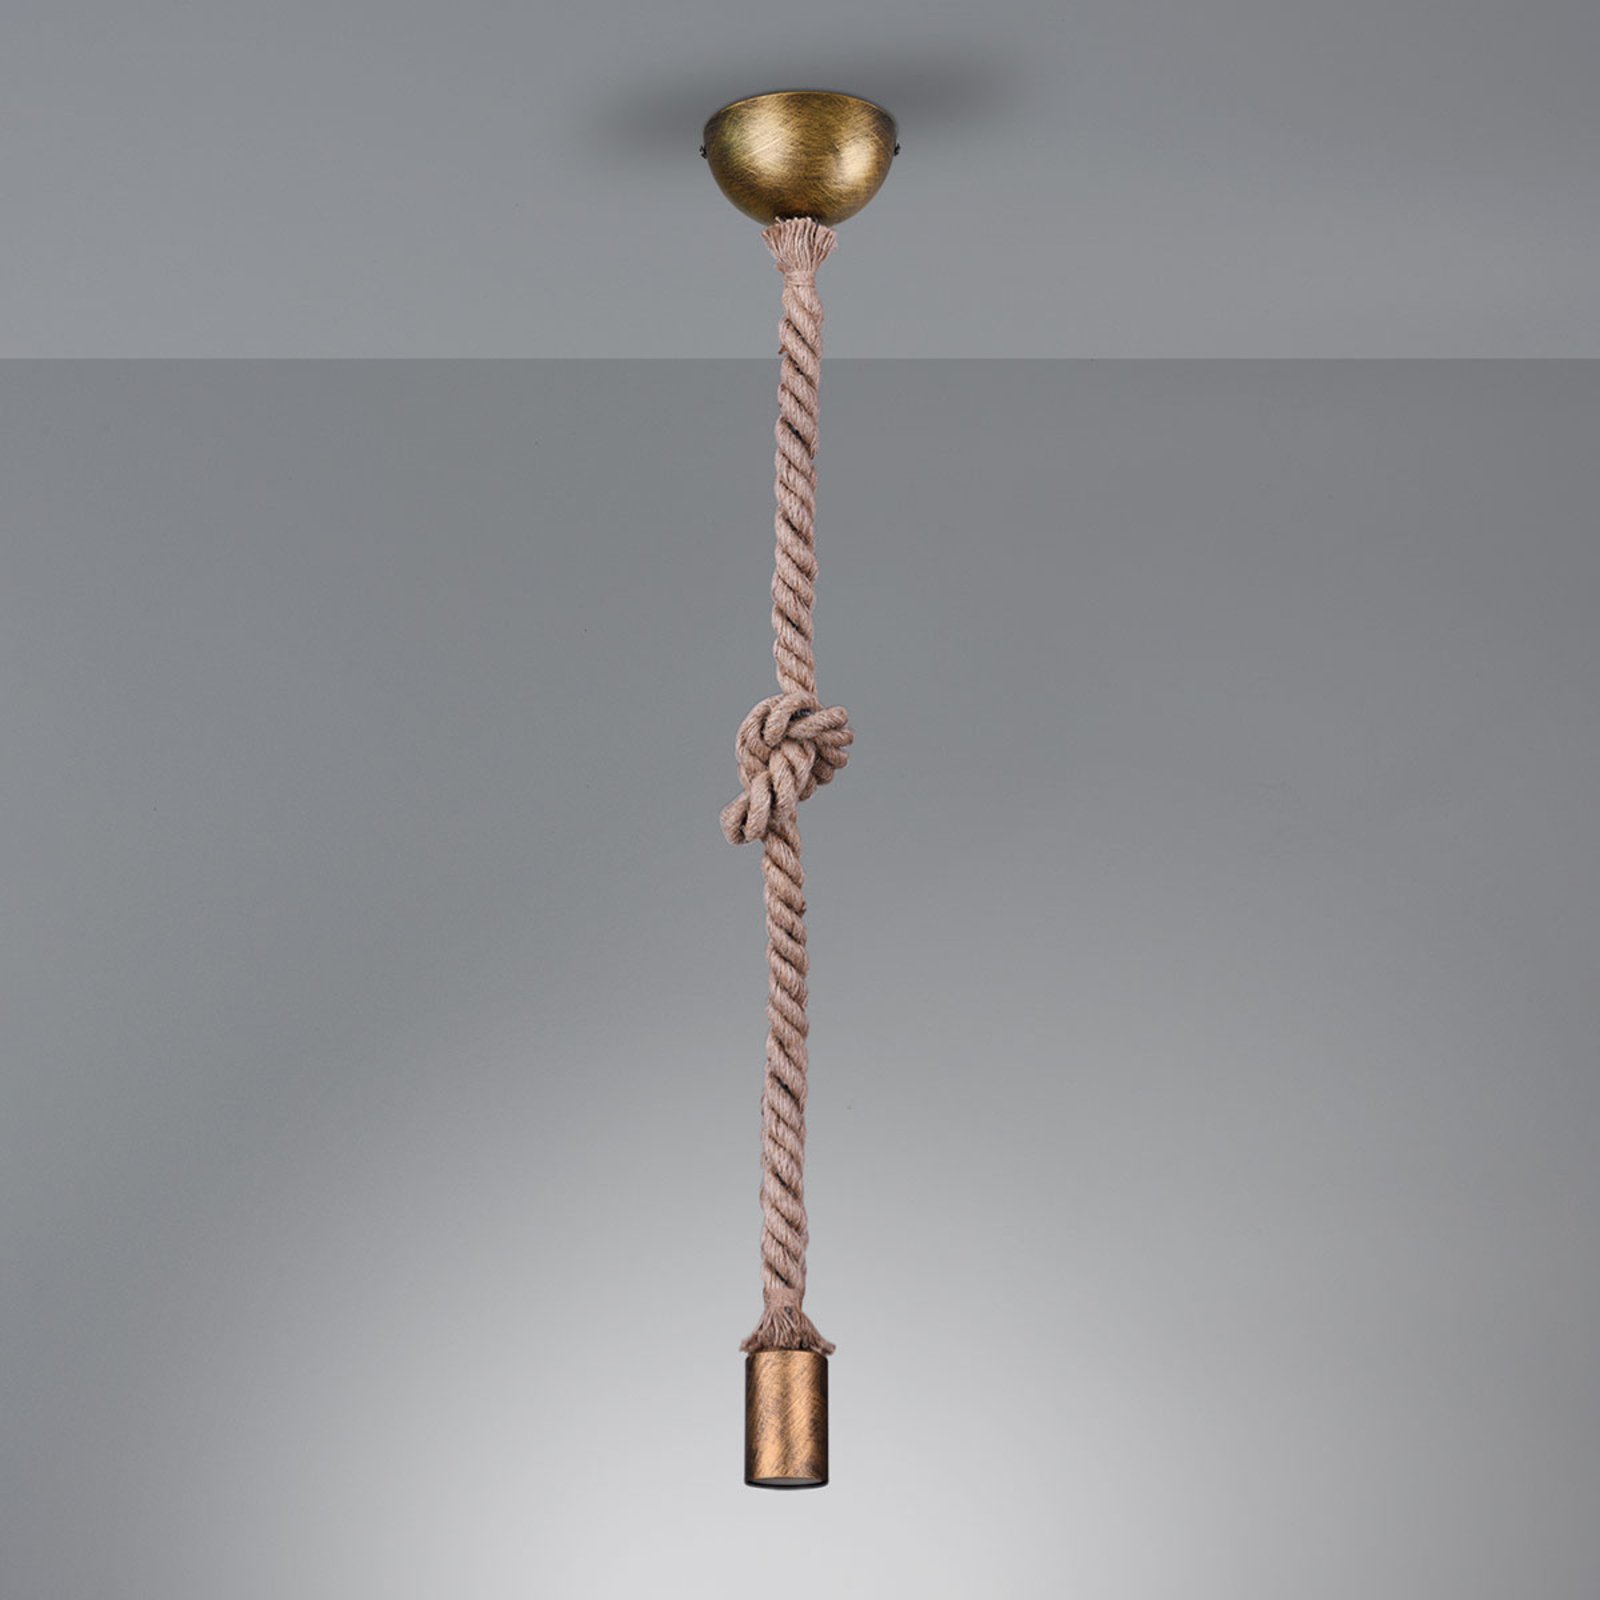 Hanglamp Rope met decoratieve kabel, 1-lamp